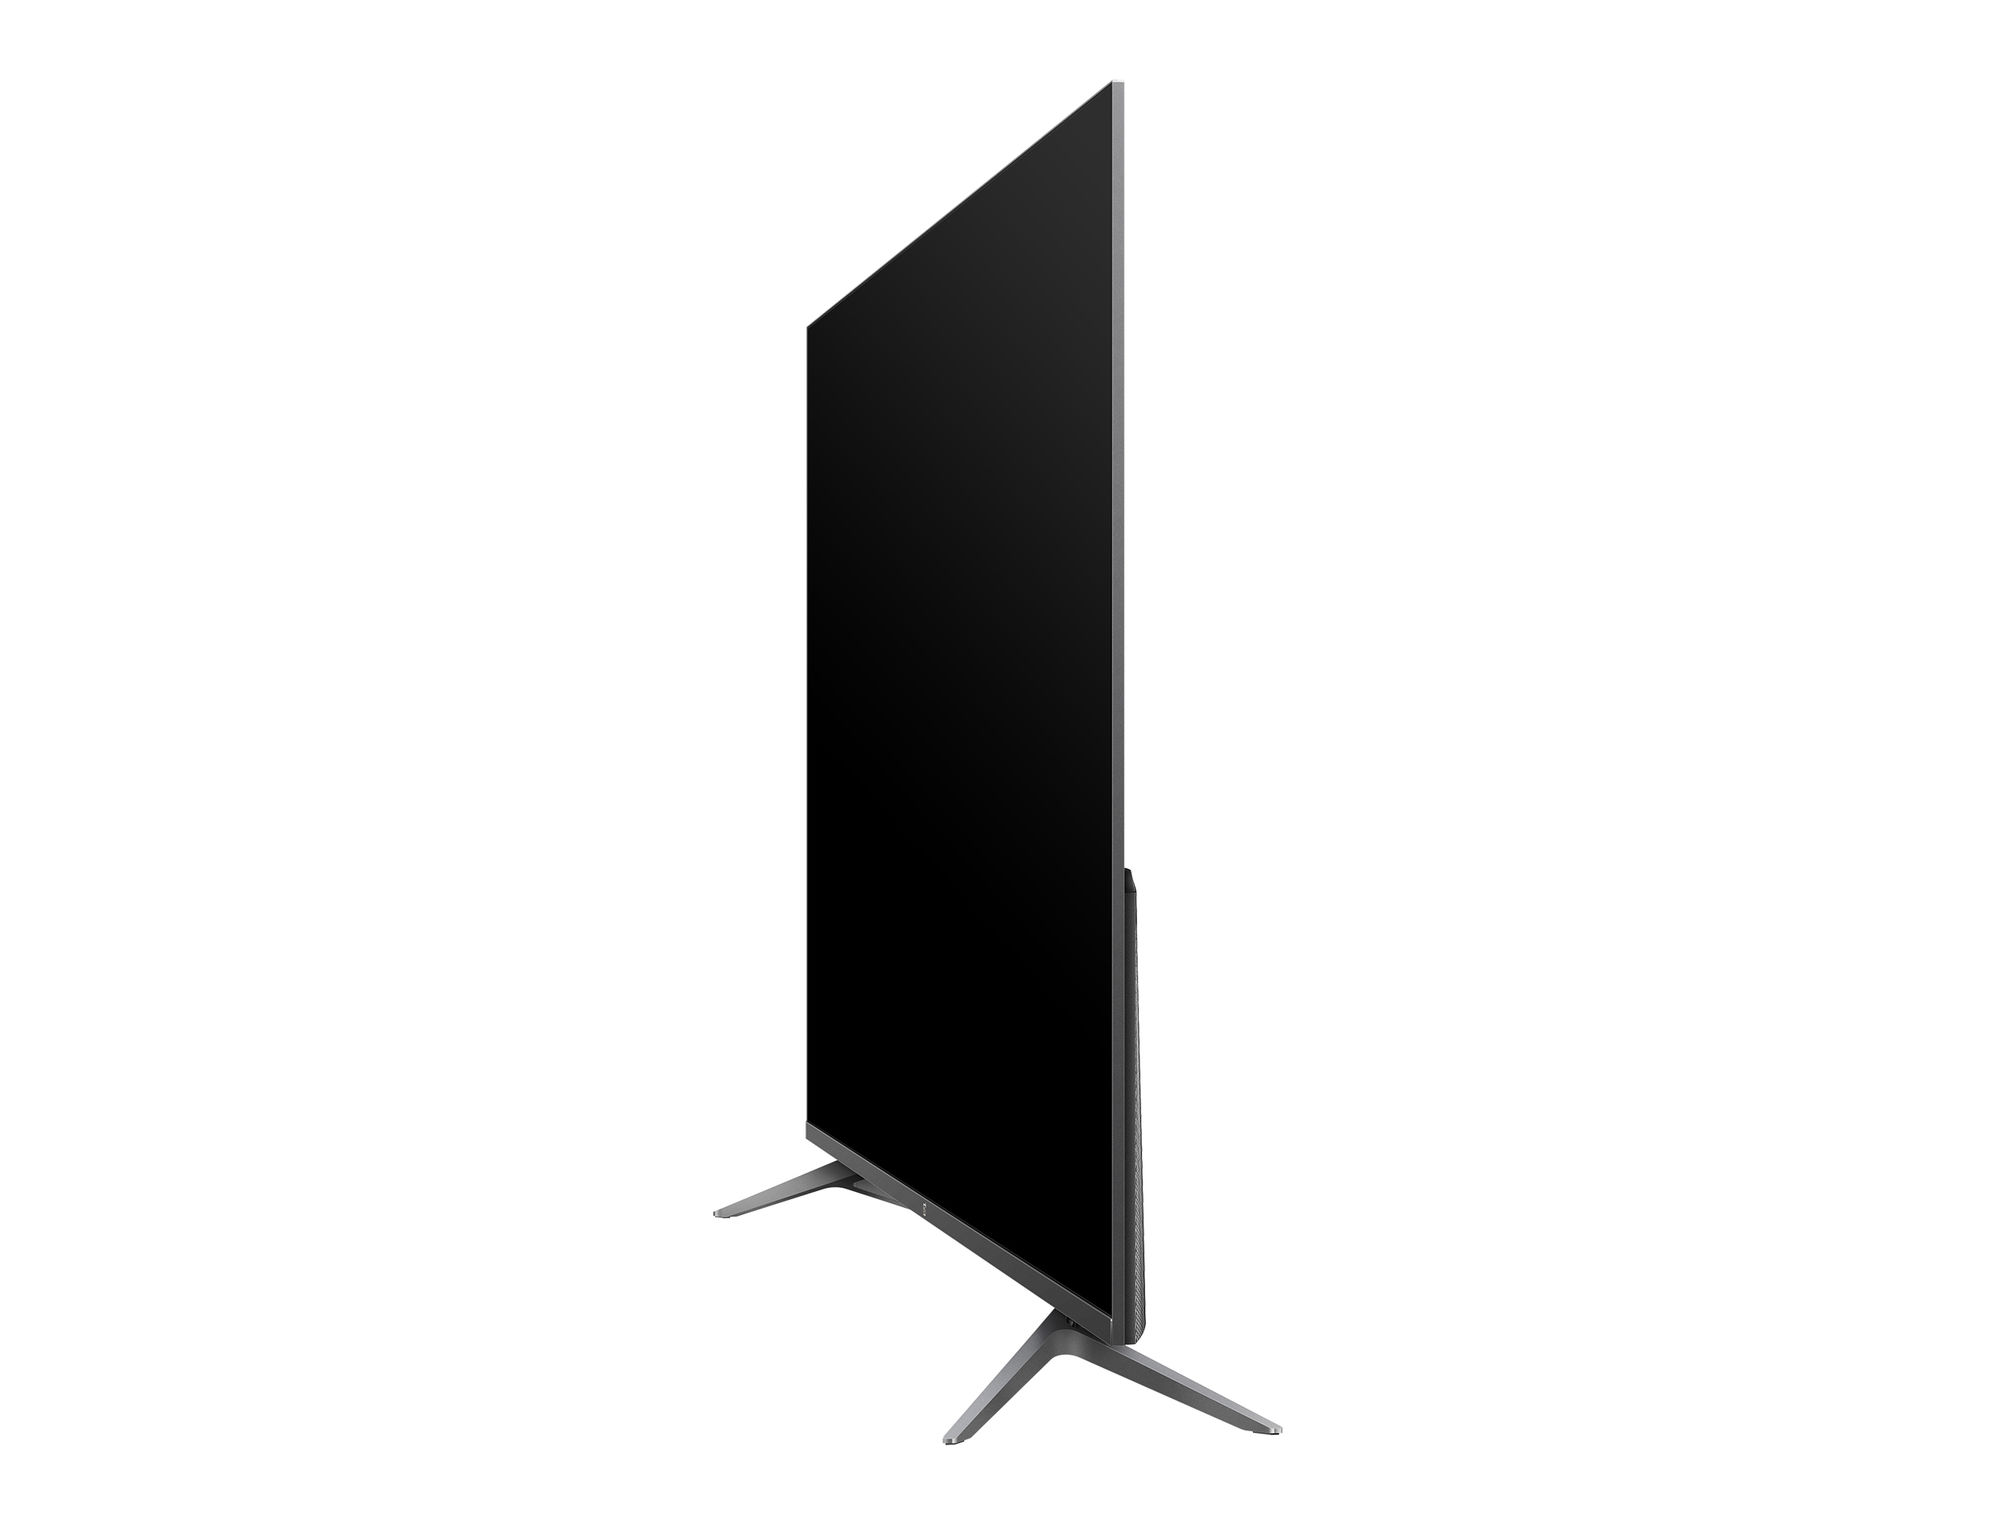 OnePlus TV 55U1